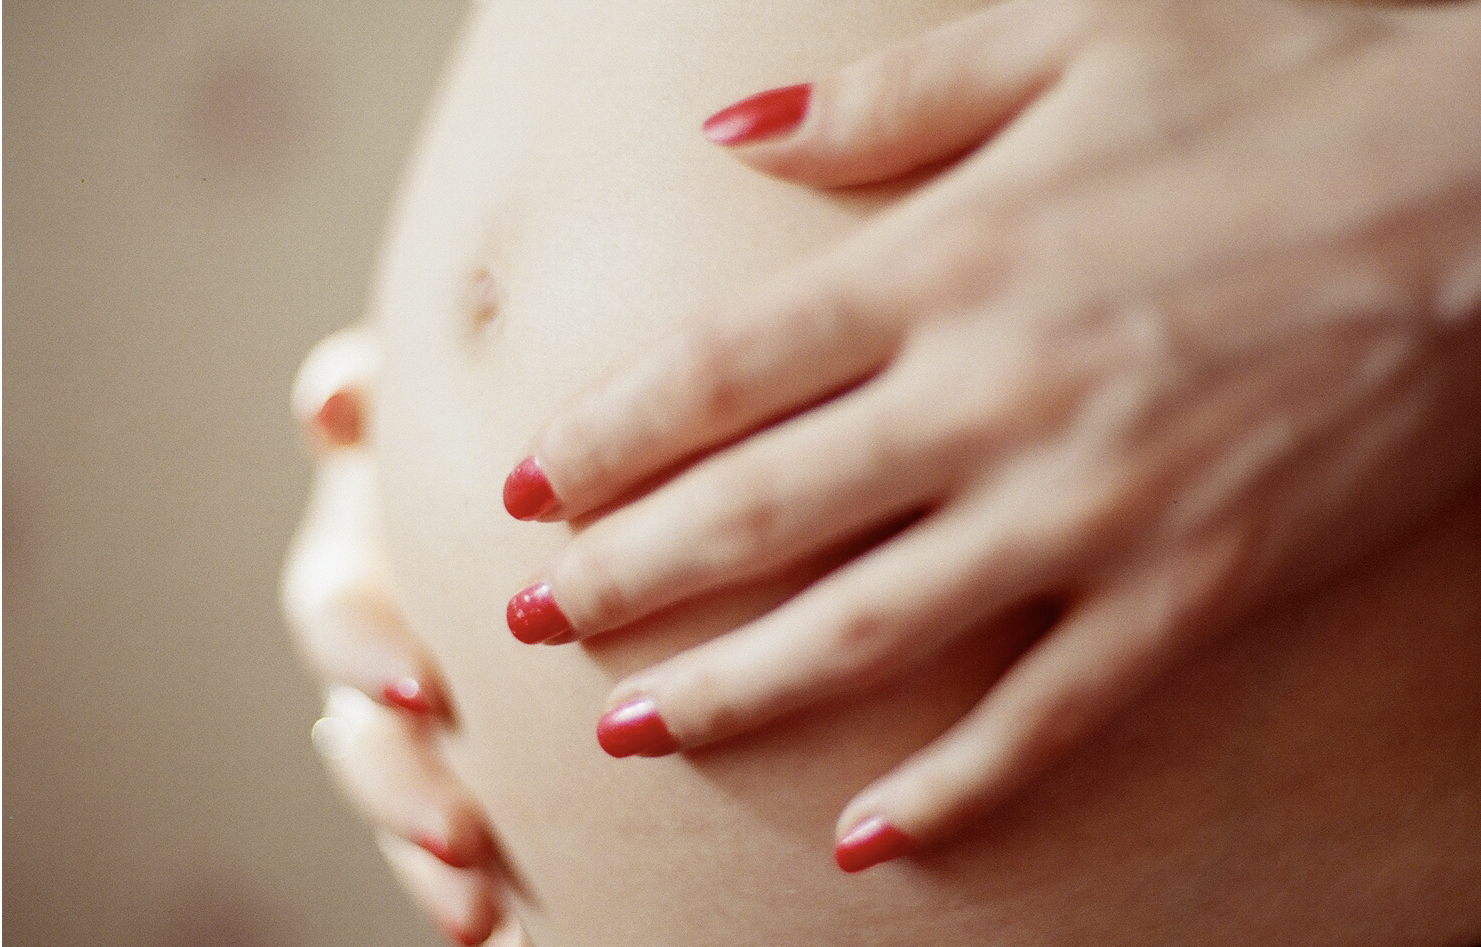 La dieta está muy relacionada con la duración del embarazo, según un estudio. Imagen: genue.luben. Fuente: Flickr.